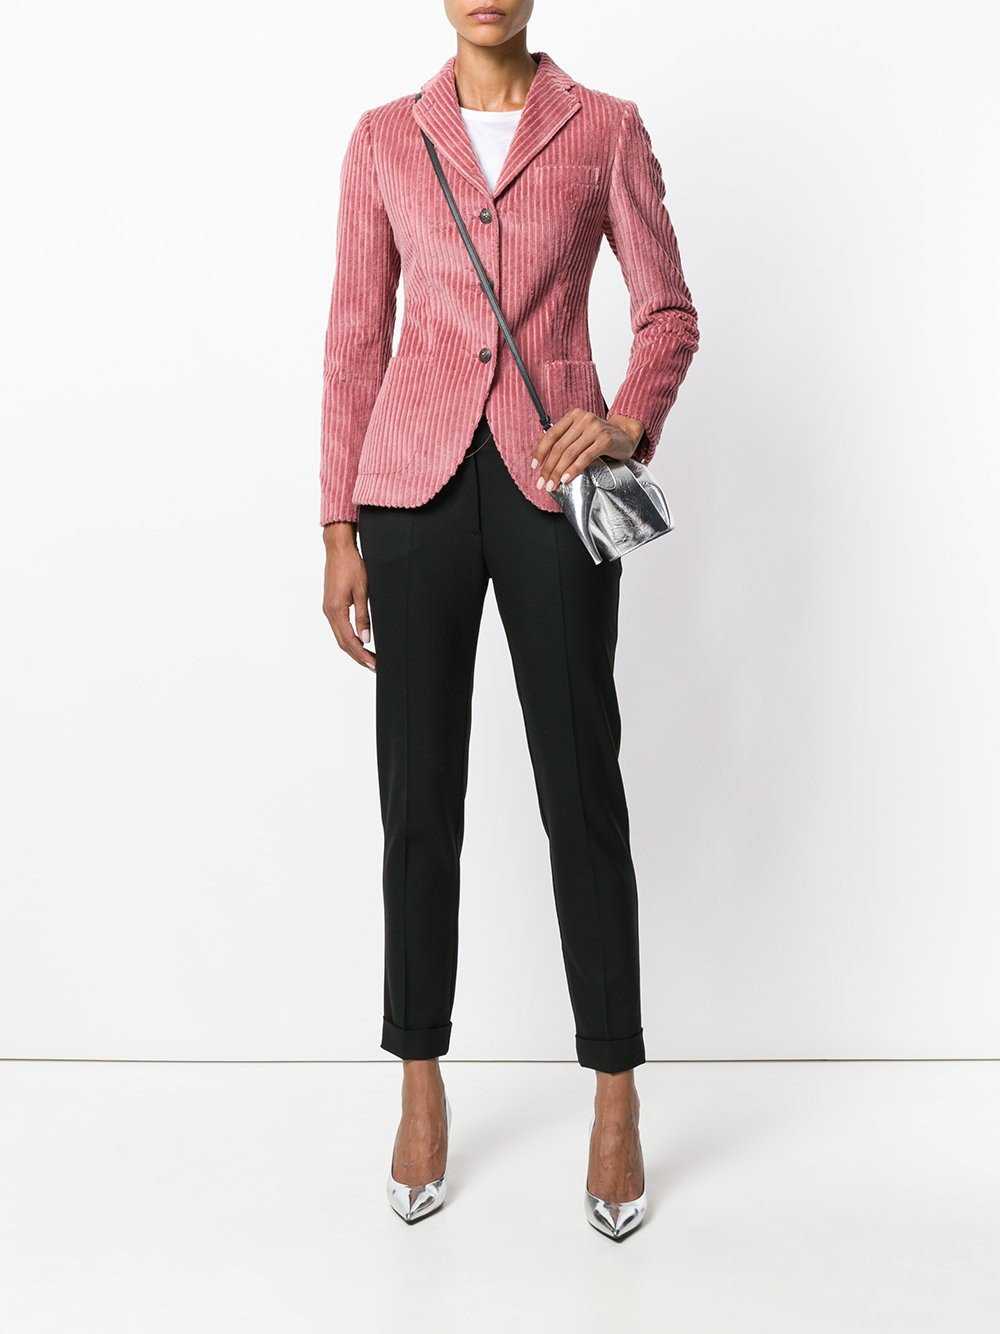 Клубный пиджак позволит создать непринужденный образ с нотками делового стиля На какие женские модели стоит обратить внимание и с чем его носить